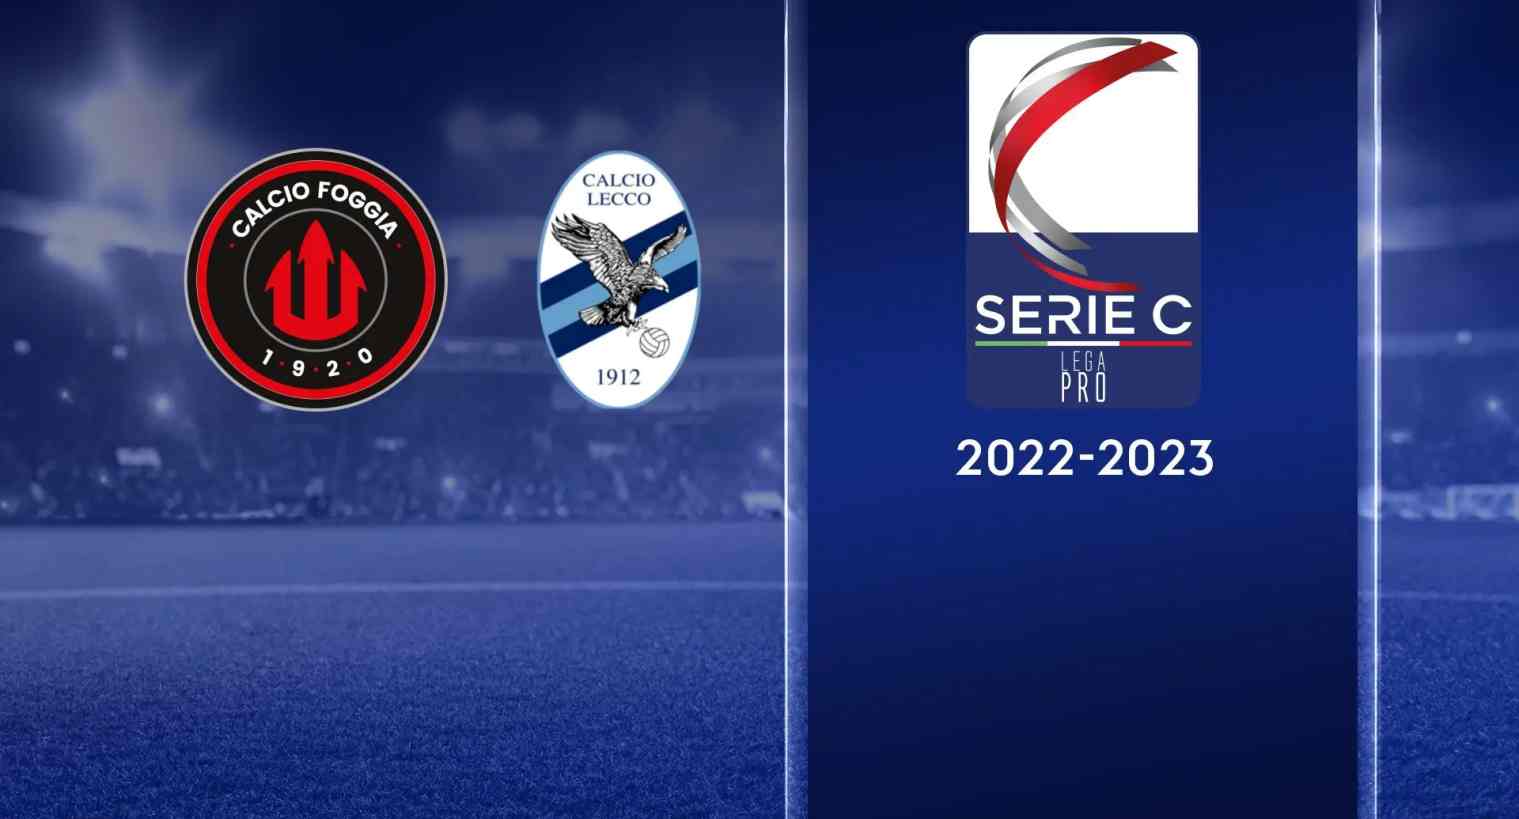 Serie C, Finale Playoff Andata Foggia - Lecco (diretta Sky Sport, Rai 2, Eleven Sports, DAZN)